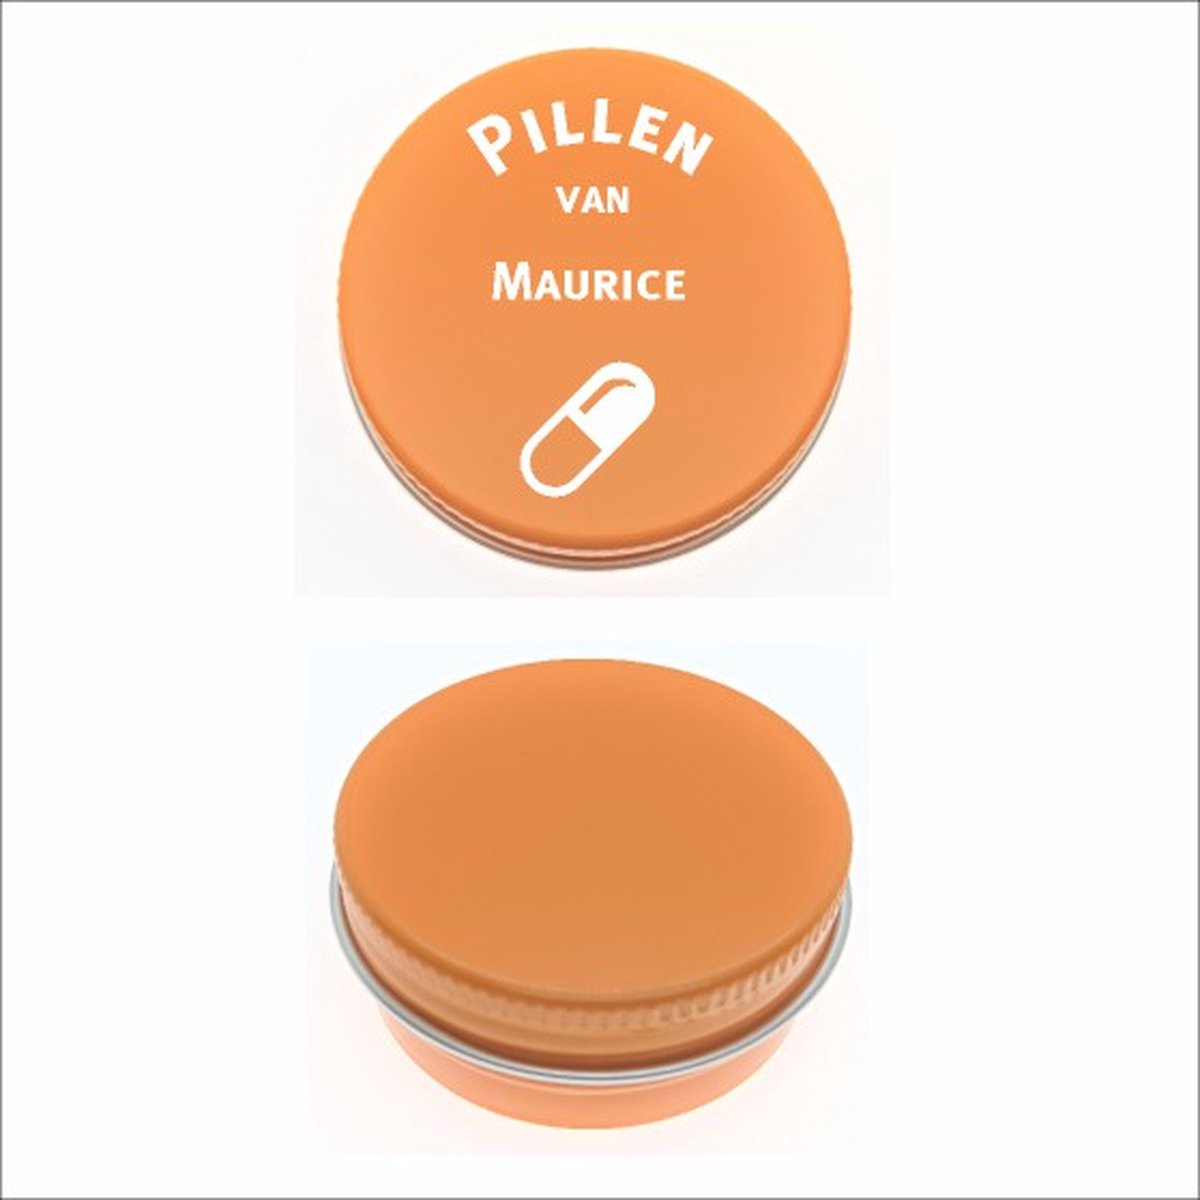 Pillen Blikje Met Naam Gravering - Maurice